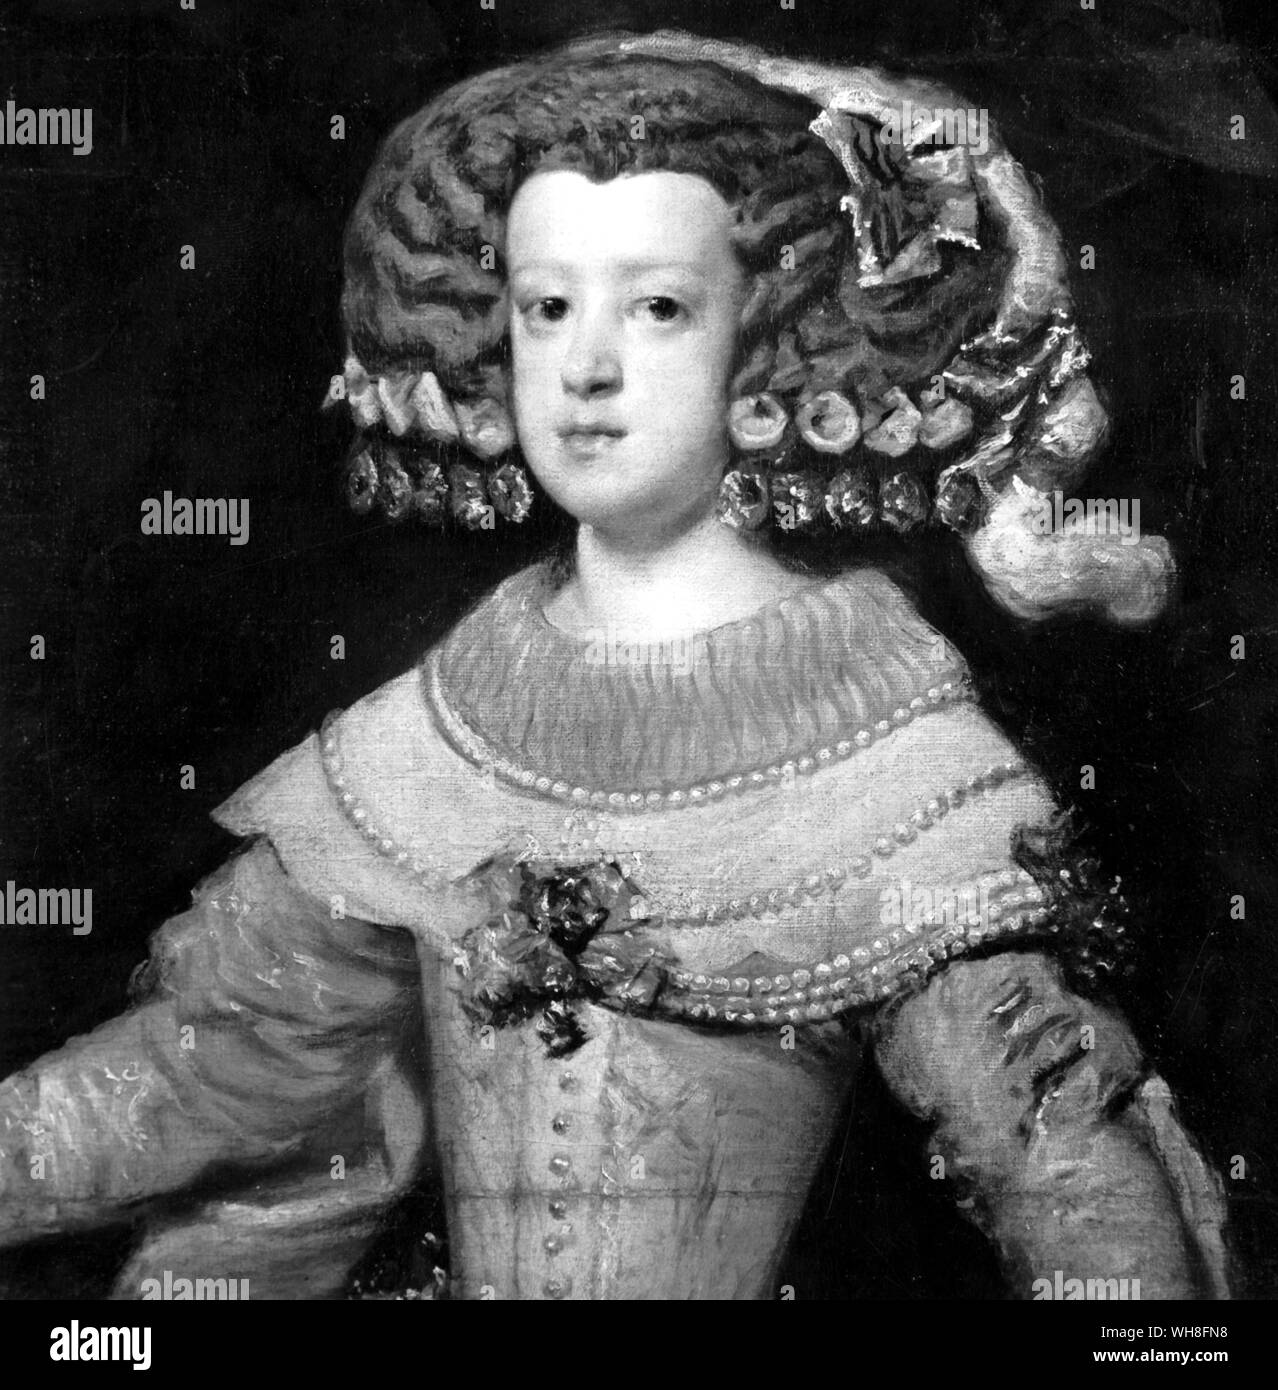 Marie Therese come Infanta da Diego Velázquez, (1599-1660) Barocco spagnolo era pittore. Maria Teresa di Spagna (francese: Marie Thérèse) (1638-1683), regina consorte della Francia come moglie di Luigi XIV di Francia, nacque a El Escorial come figlia di Filippo IV di Spagna e di Elisabetta di Francia (1602-1644). . . . . . . Foto Stock